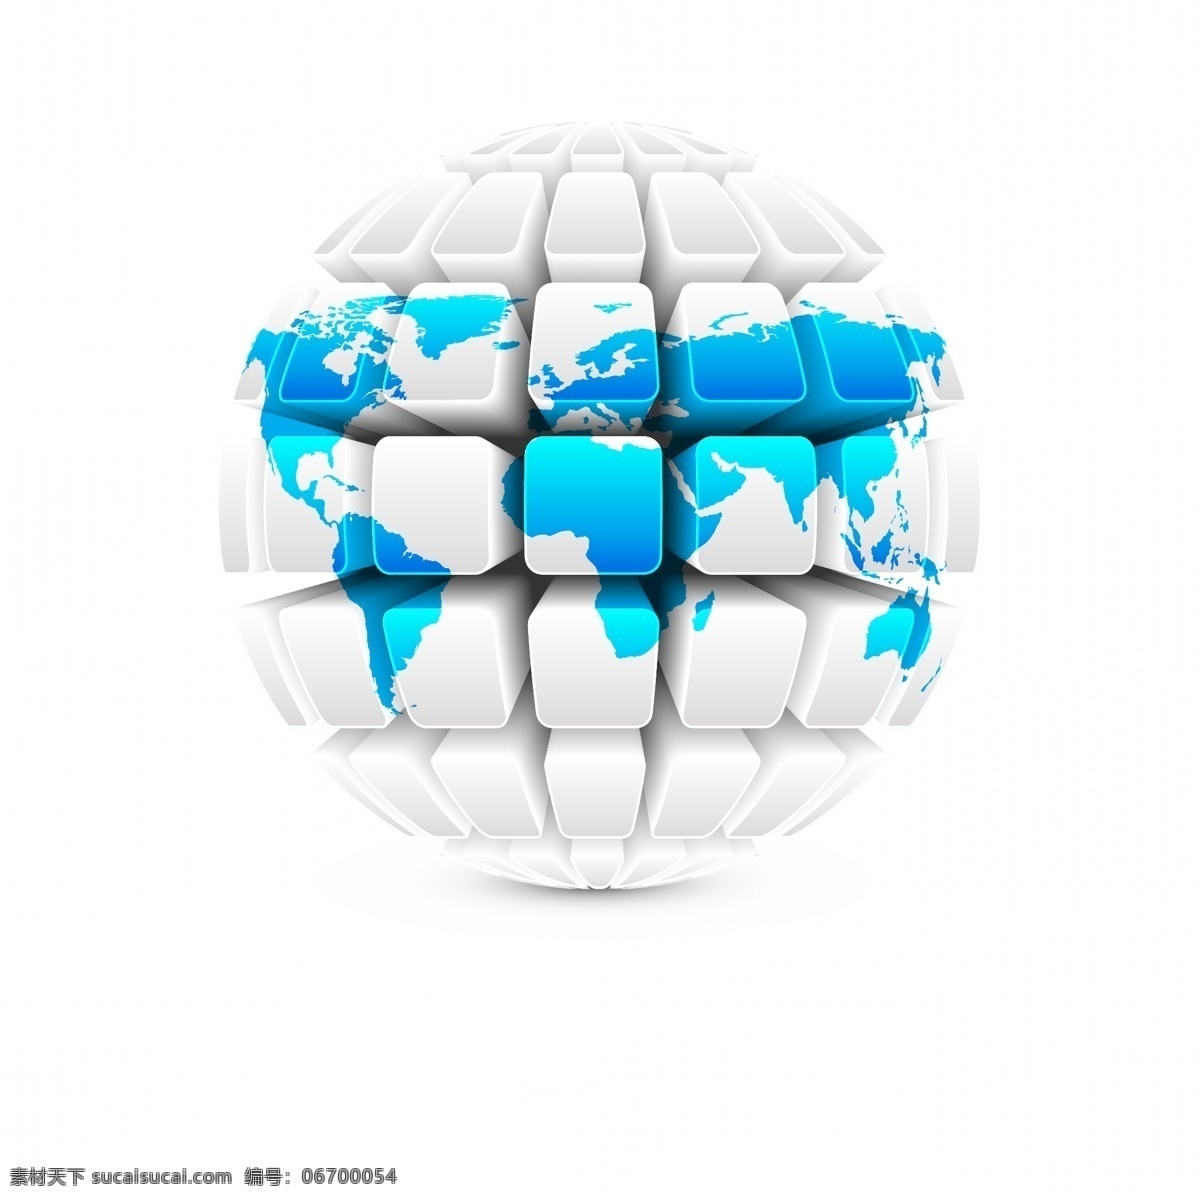 全世界 立体按键 键盘按键 3d按键 创意按键 地理 矢量世界 卡通世界 手绘世界 世界插画 几何世界 圆形世界 地球 矢量地球 卡通地球 手绘地球 地球插画 地球集合 系列地球 地球系列 创意地球 艺术地球 图标标签标志 标志图标 其他图标